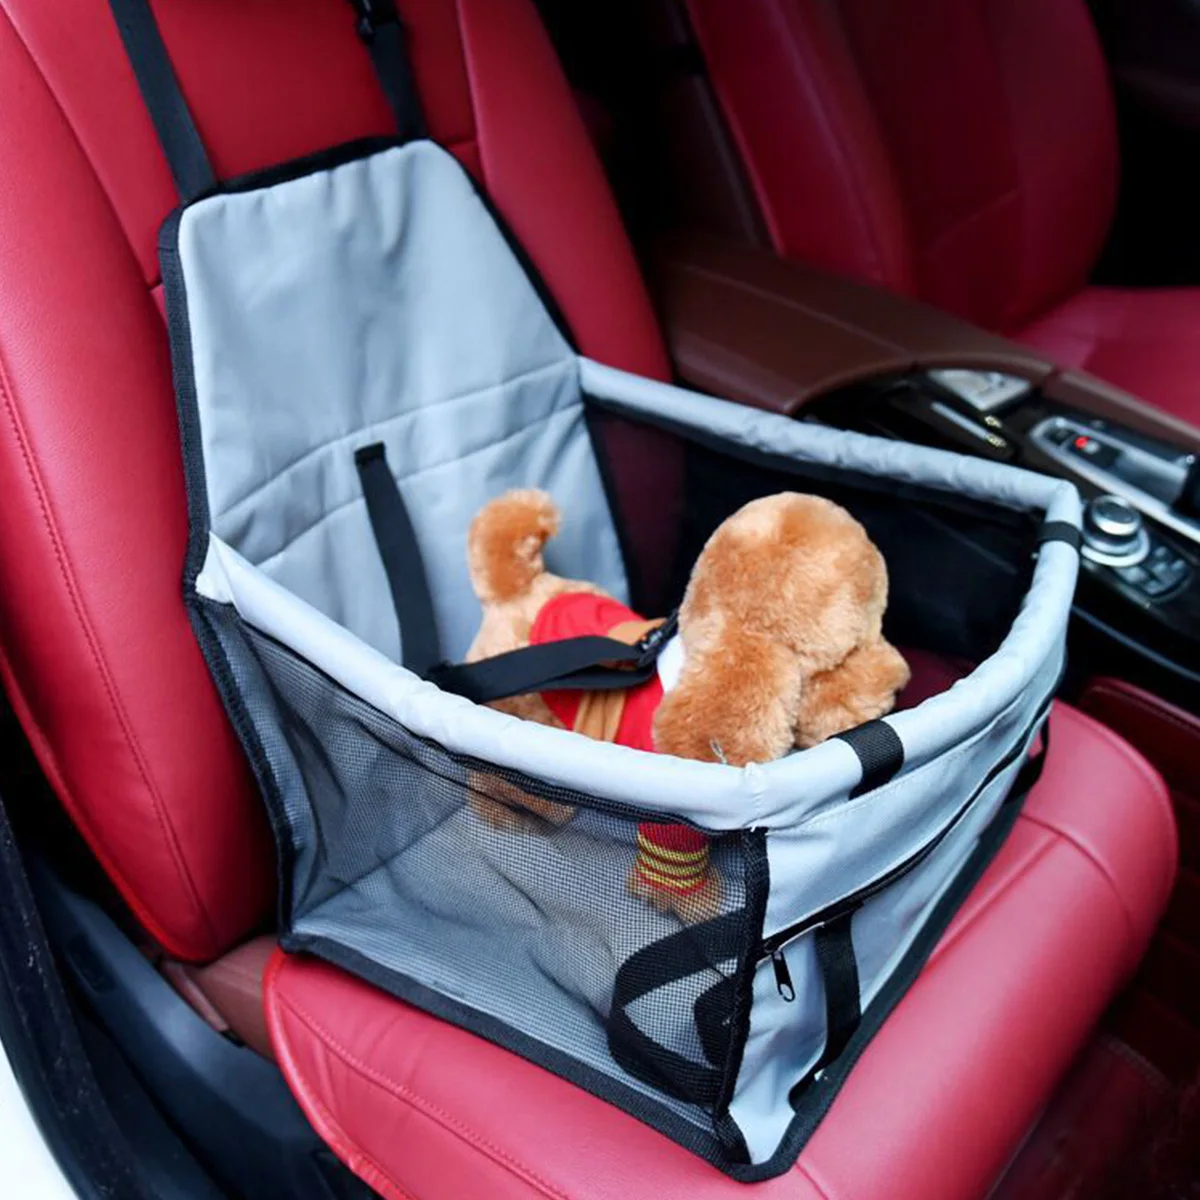 Складная сумка для сидения в автомобиль для питомца, собаки, кошки, переноски, переноска для питомца, защитная сетка для сидения в автомобиле, защитный коврик для собаки, одеяло, автомобильные переноски для питомца